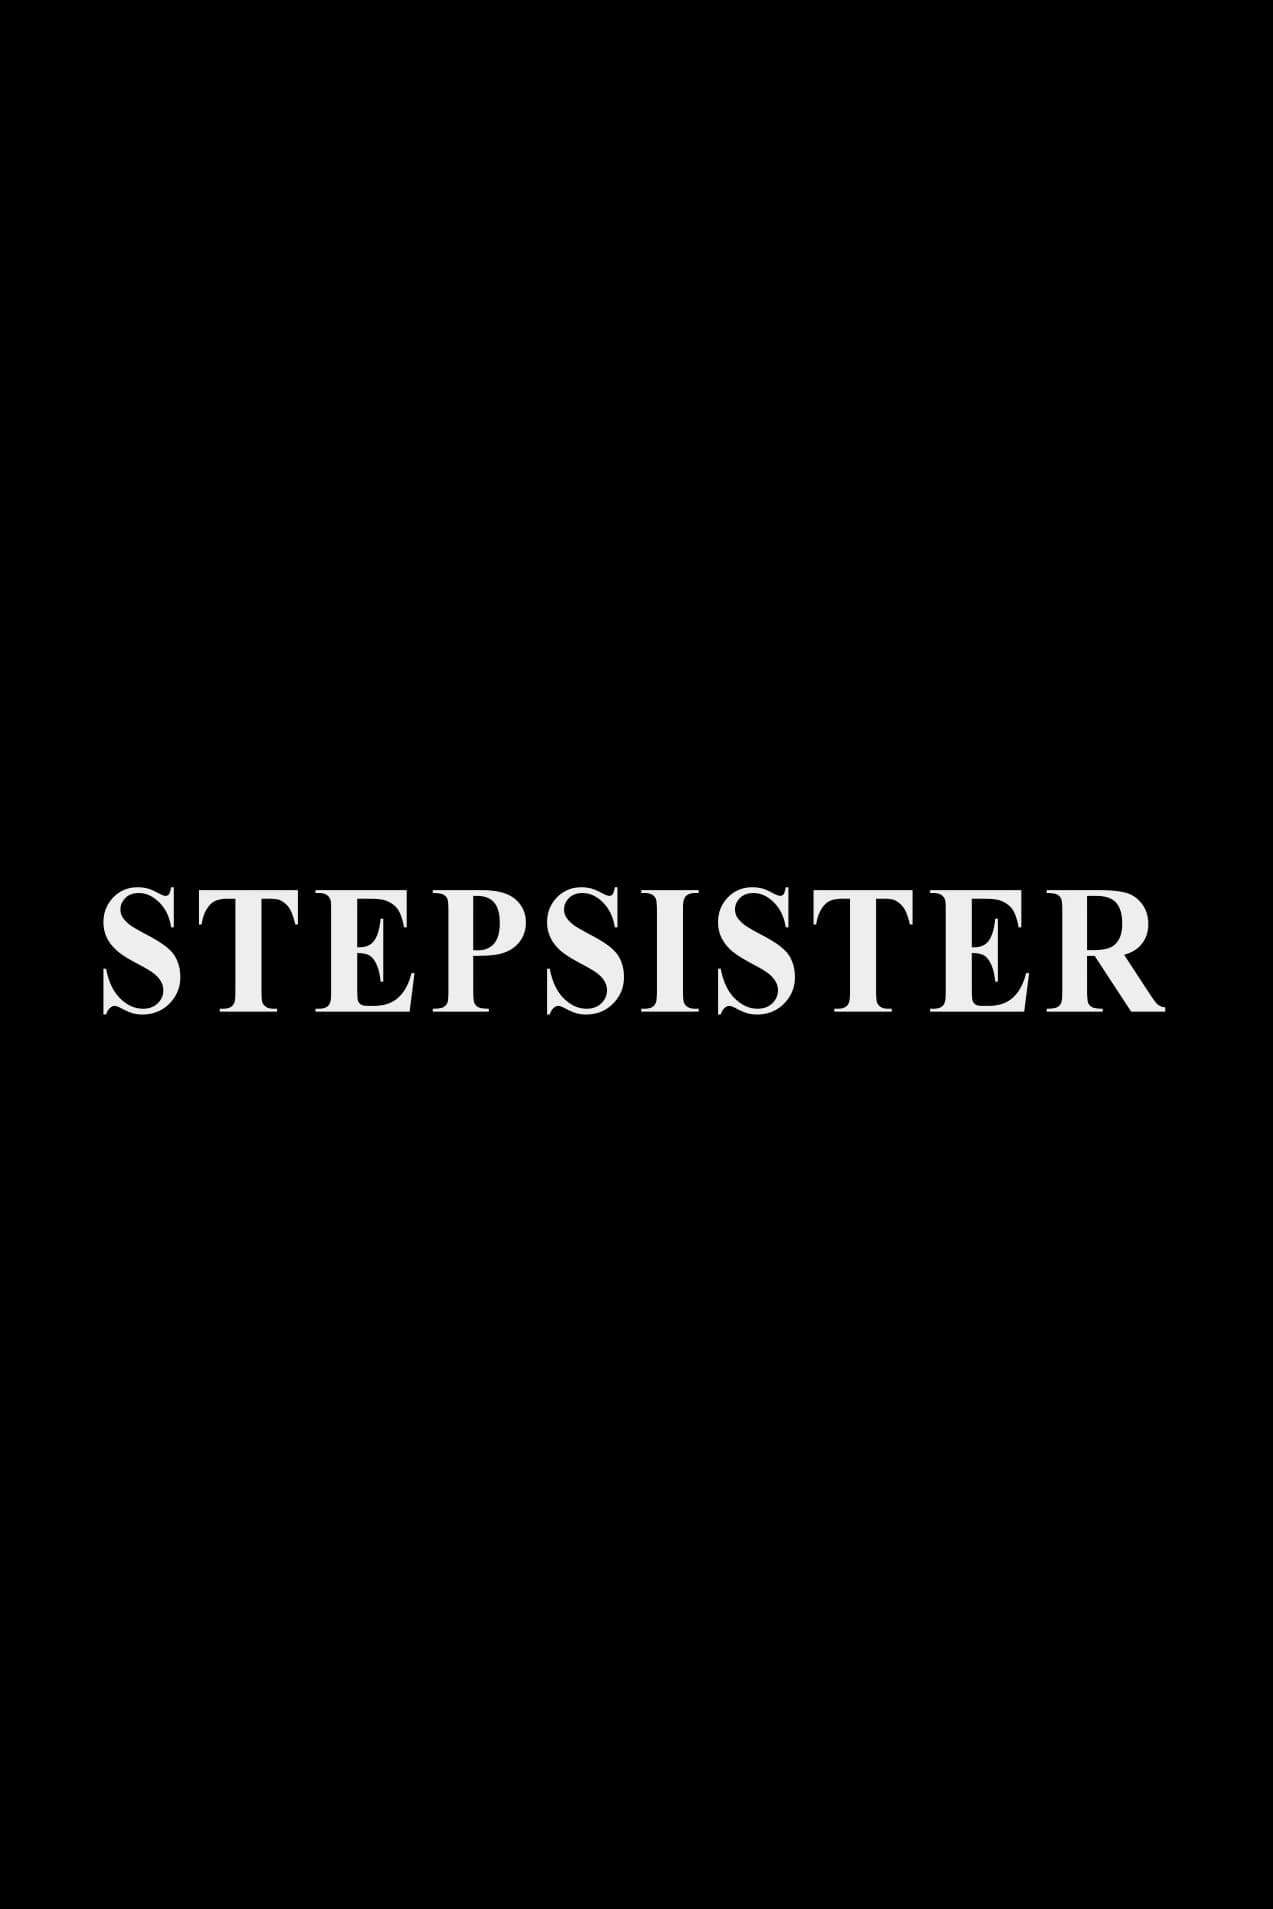 Stepsister